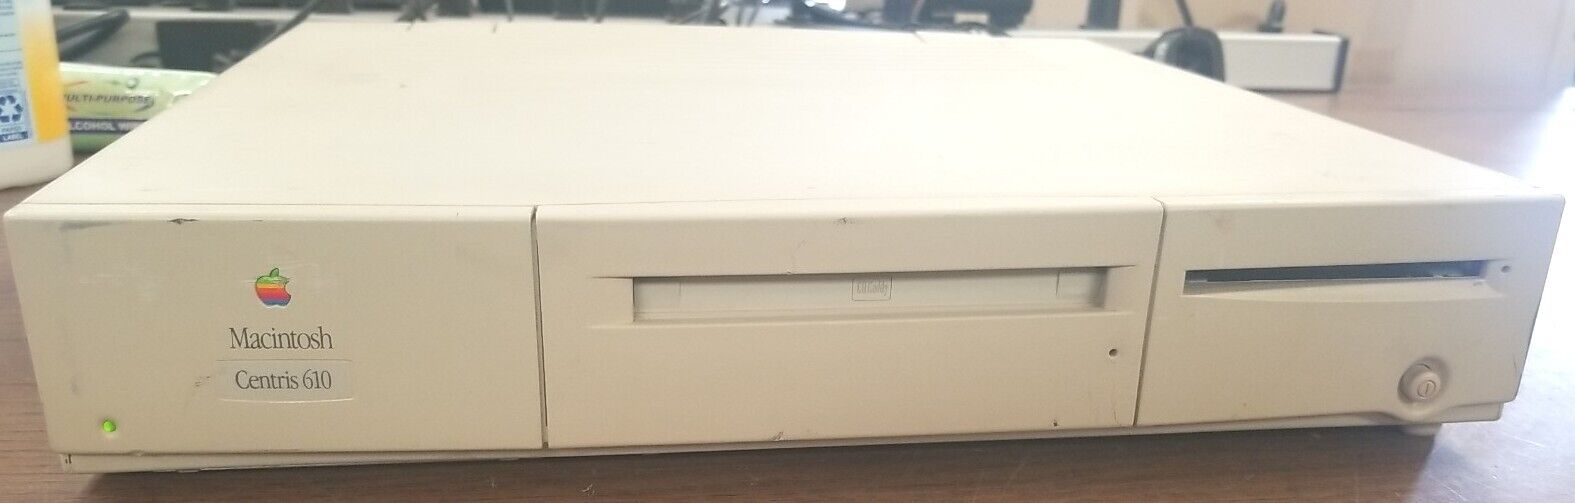 1993 Vintage Apple M1444 Macintosh Centris 610 Computer. READ DESCRIPTION⬇️